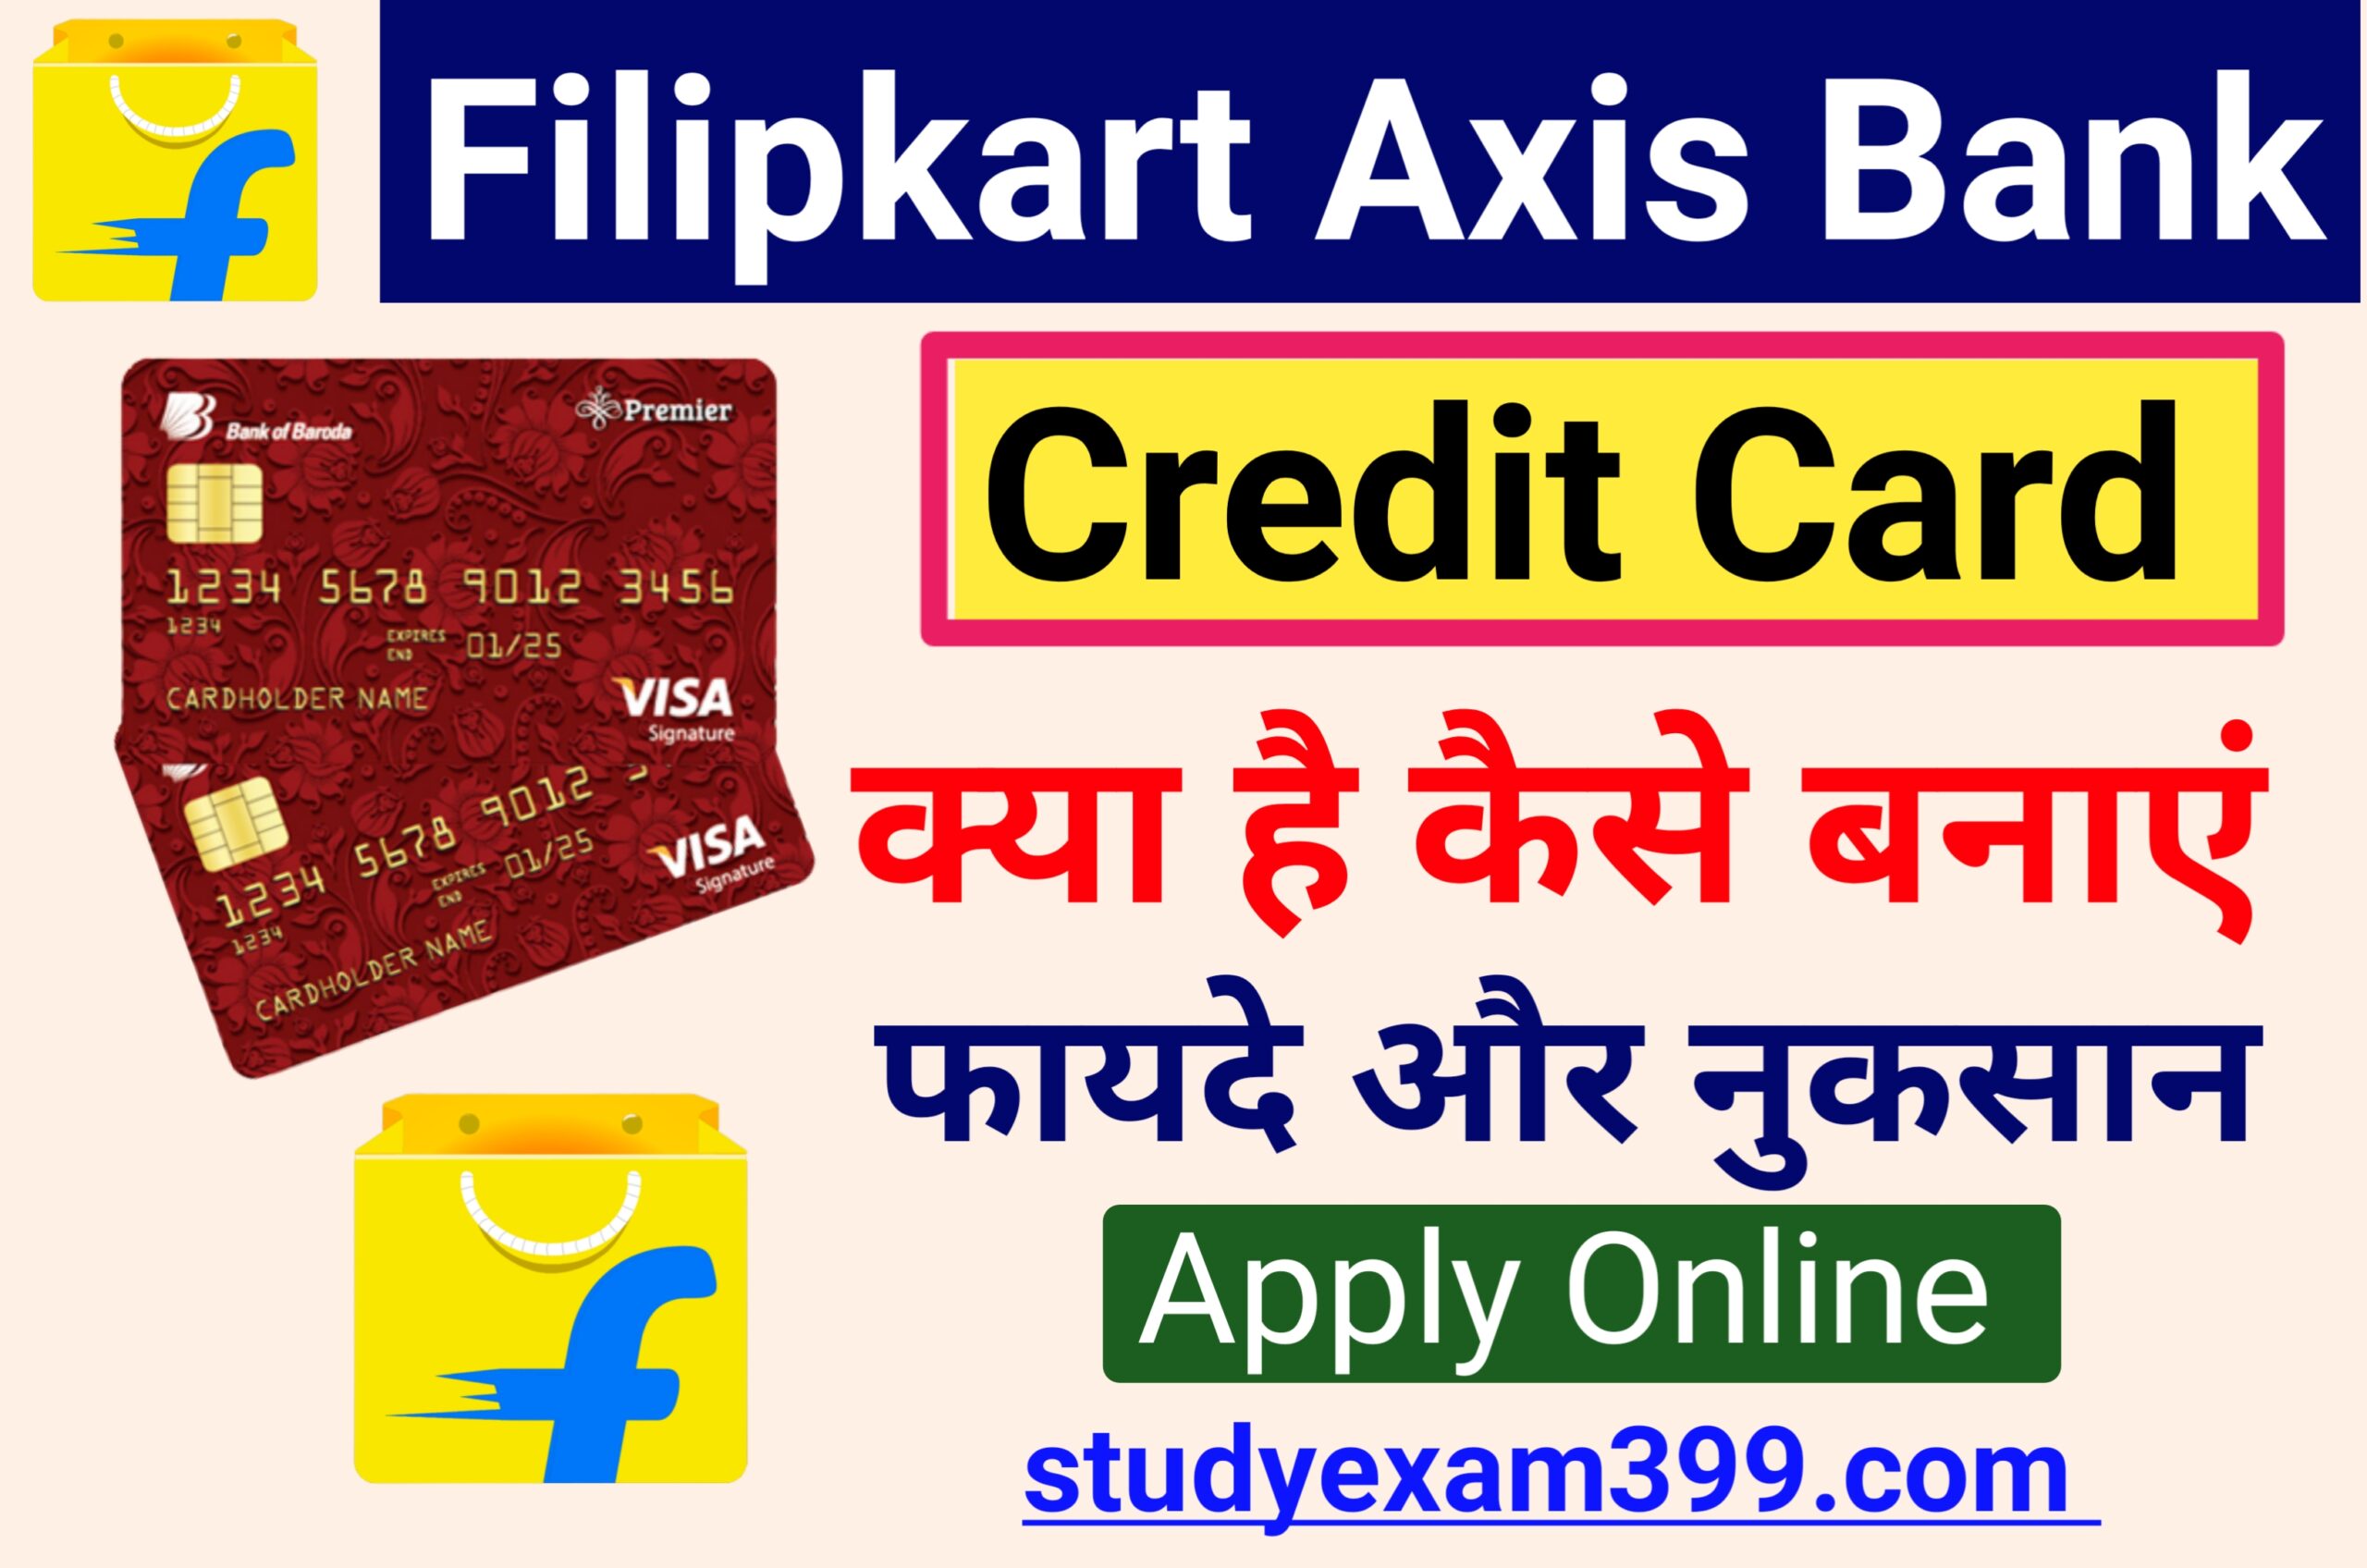 Flipkart Axis Bank Credit Card Online Apply & Benefits - फ्लिपकार्ट एक्सिस बैंक क्रेडिट कार्ड घर बैठे ऑनलाइन के माध्यम से कैसे बनाएं जानिए पूरी जानकारी और इस के क्या-क्या फायदे जानें